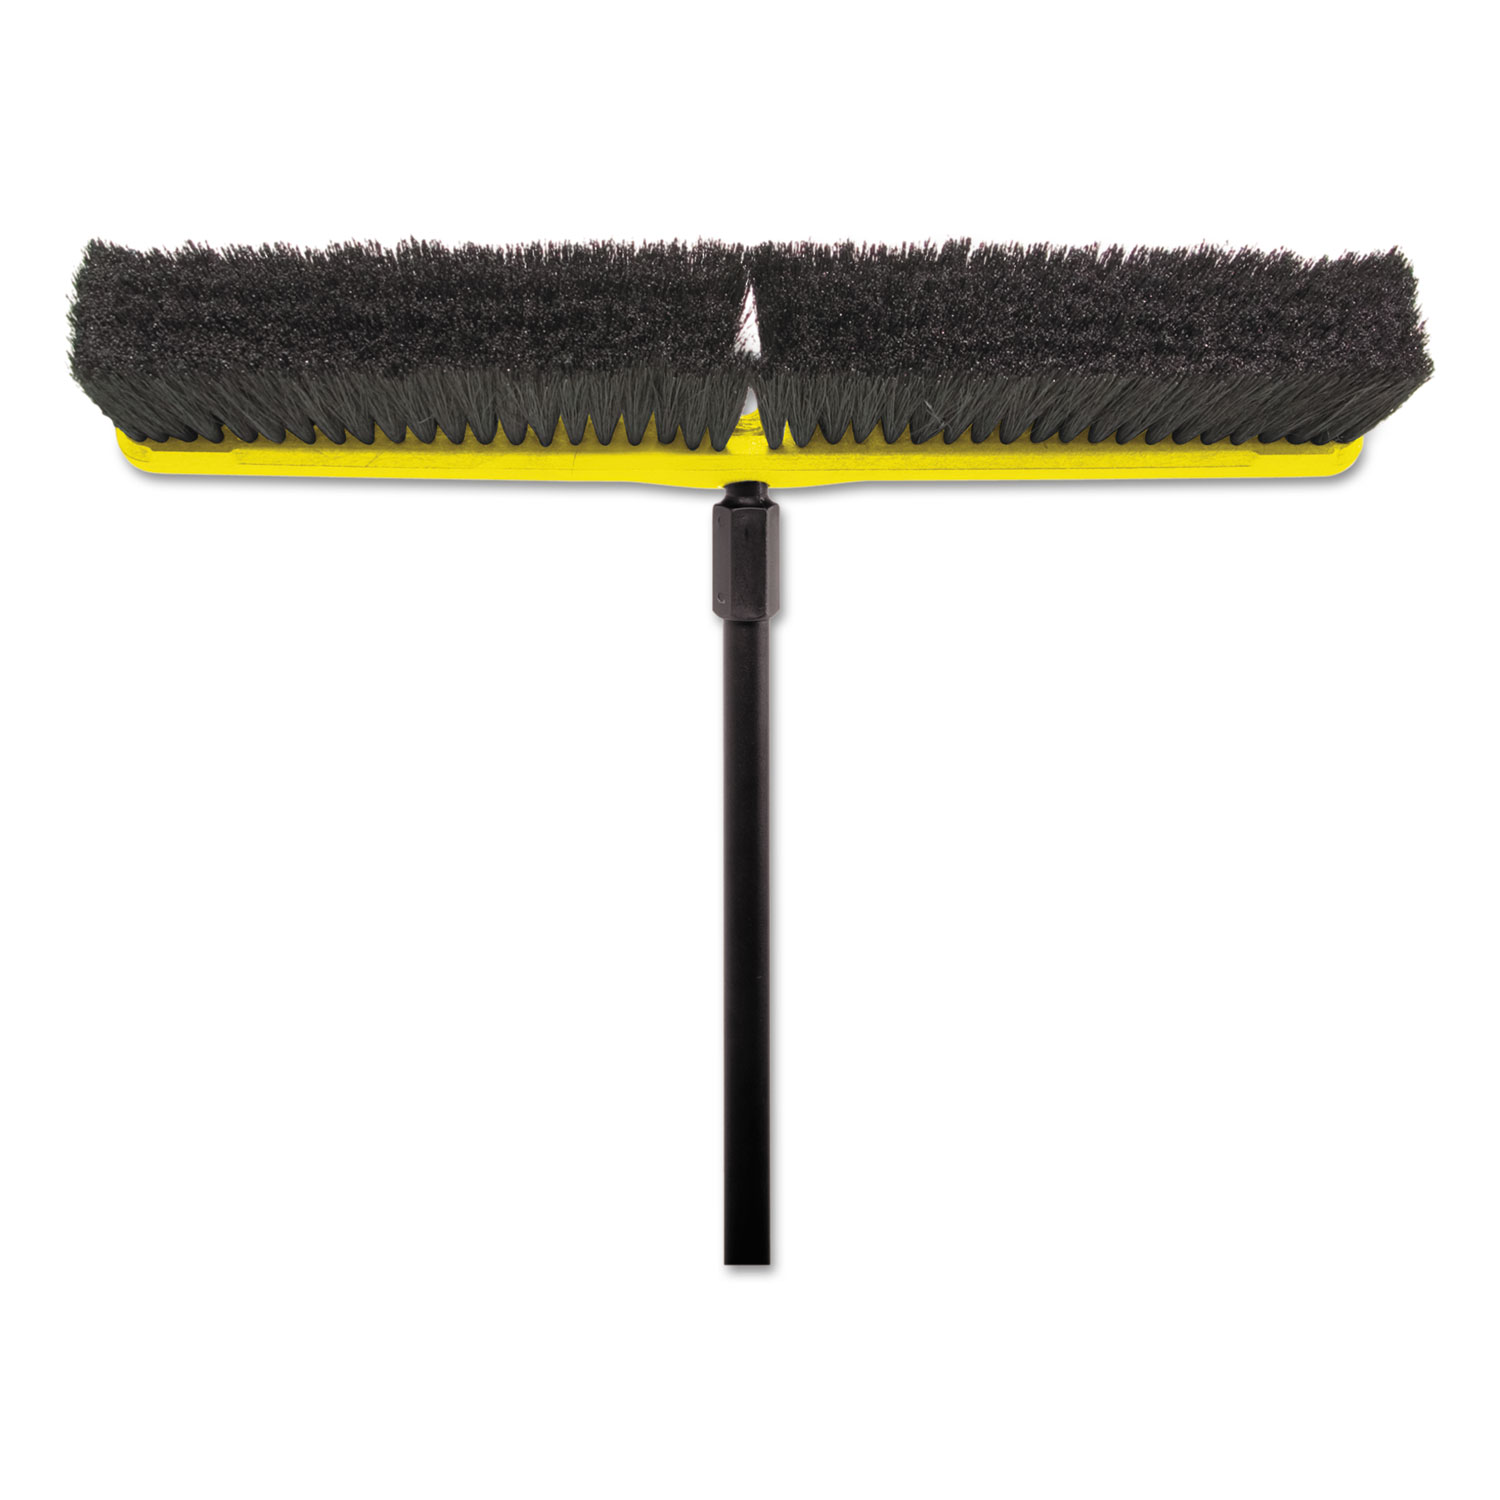 Tampico-Bristle Medium Floor Sweep, 24 Brush, 3 Bristles, Black, 12/Carton